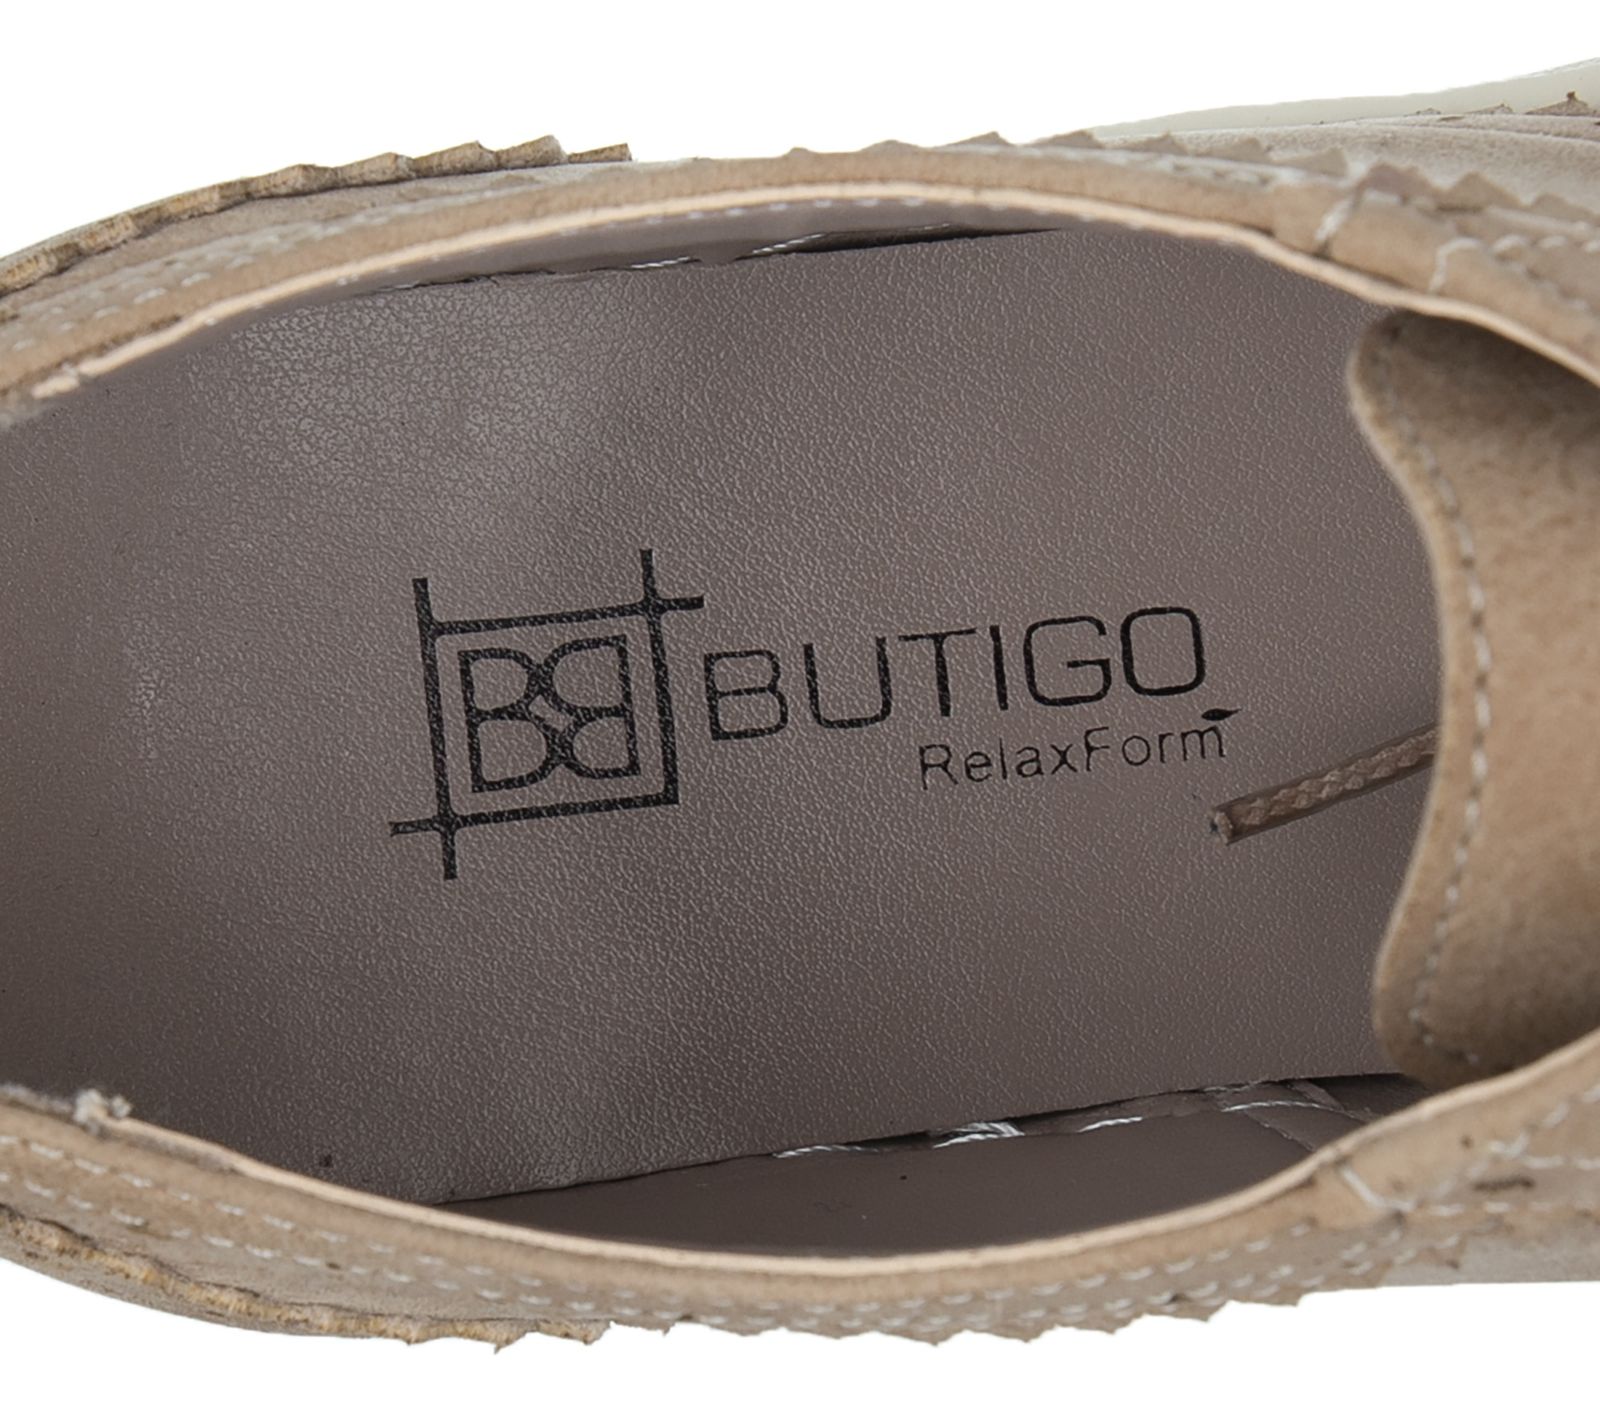 کفش روزمره زنانه بوتیگو مدل 100310452-100 - بژ - 8